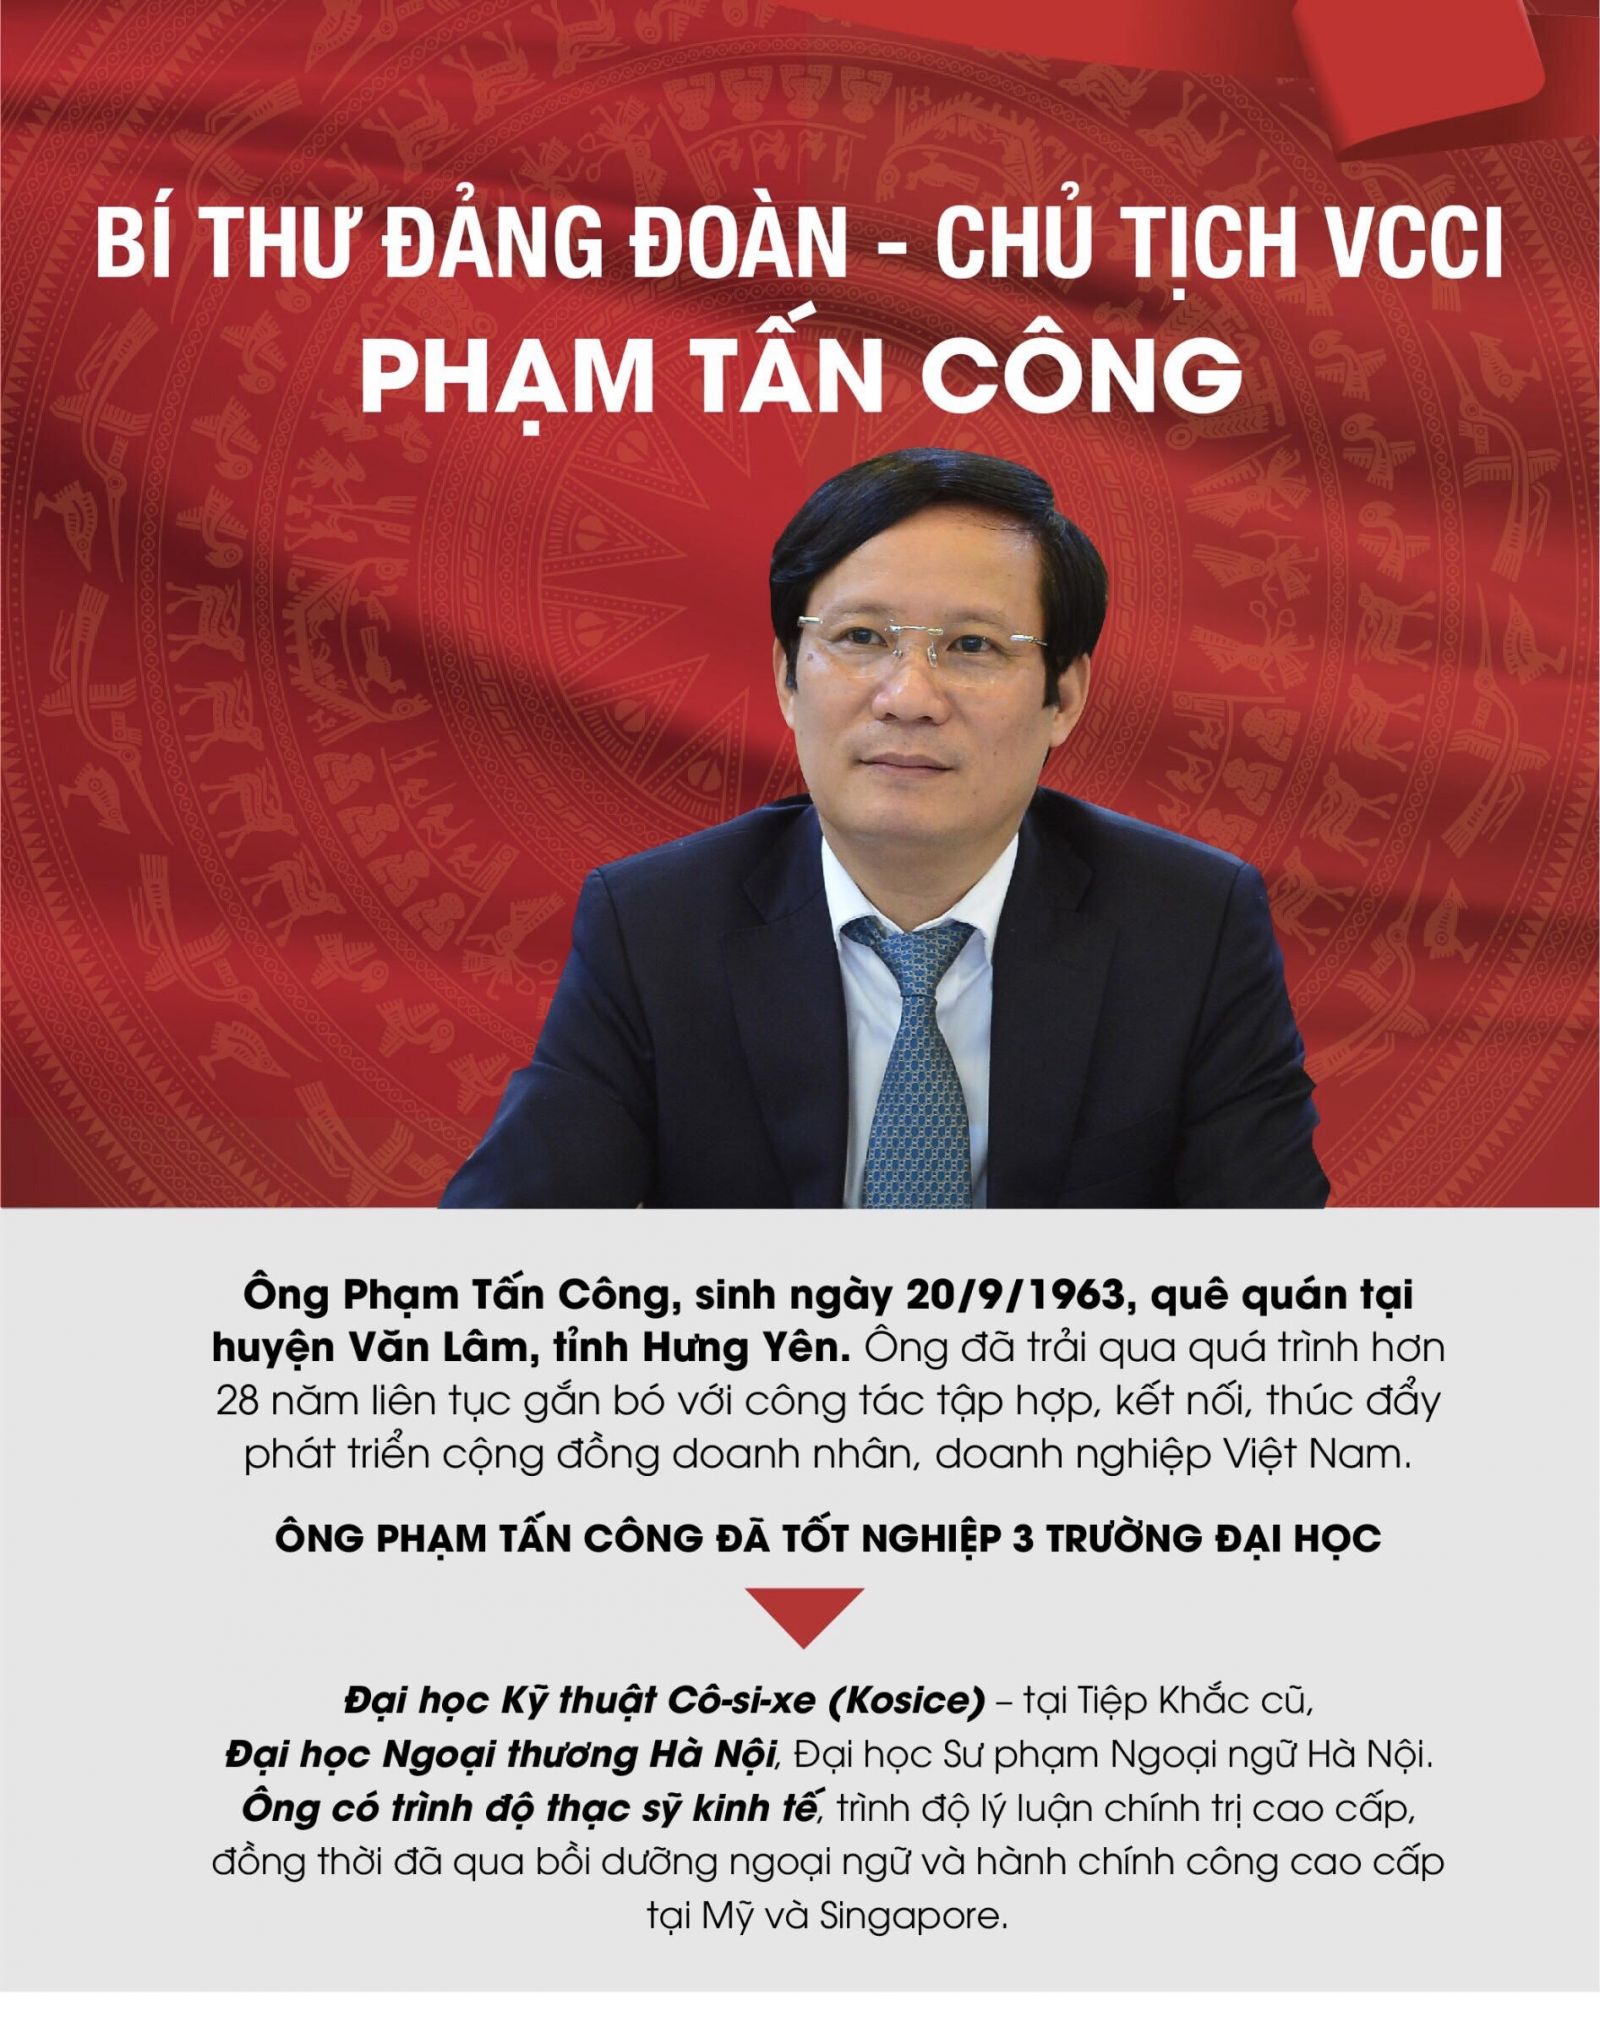 Ông Phạm Tấn Công - Tân Chủ tịch VCCI